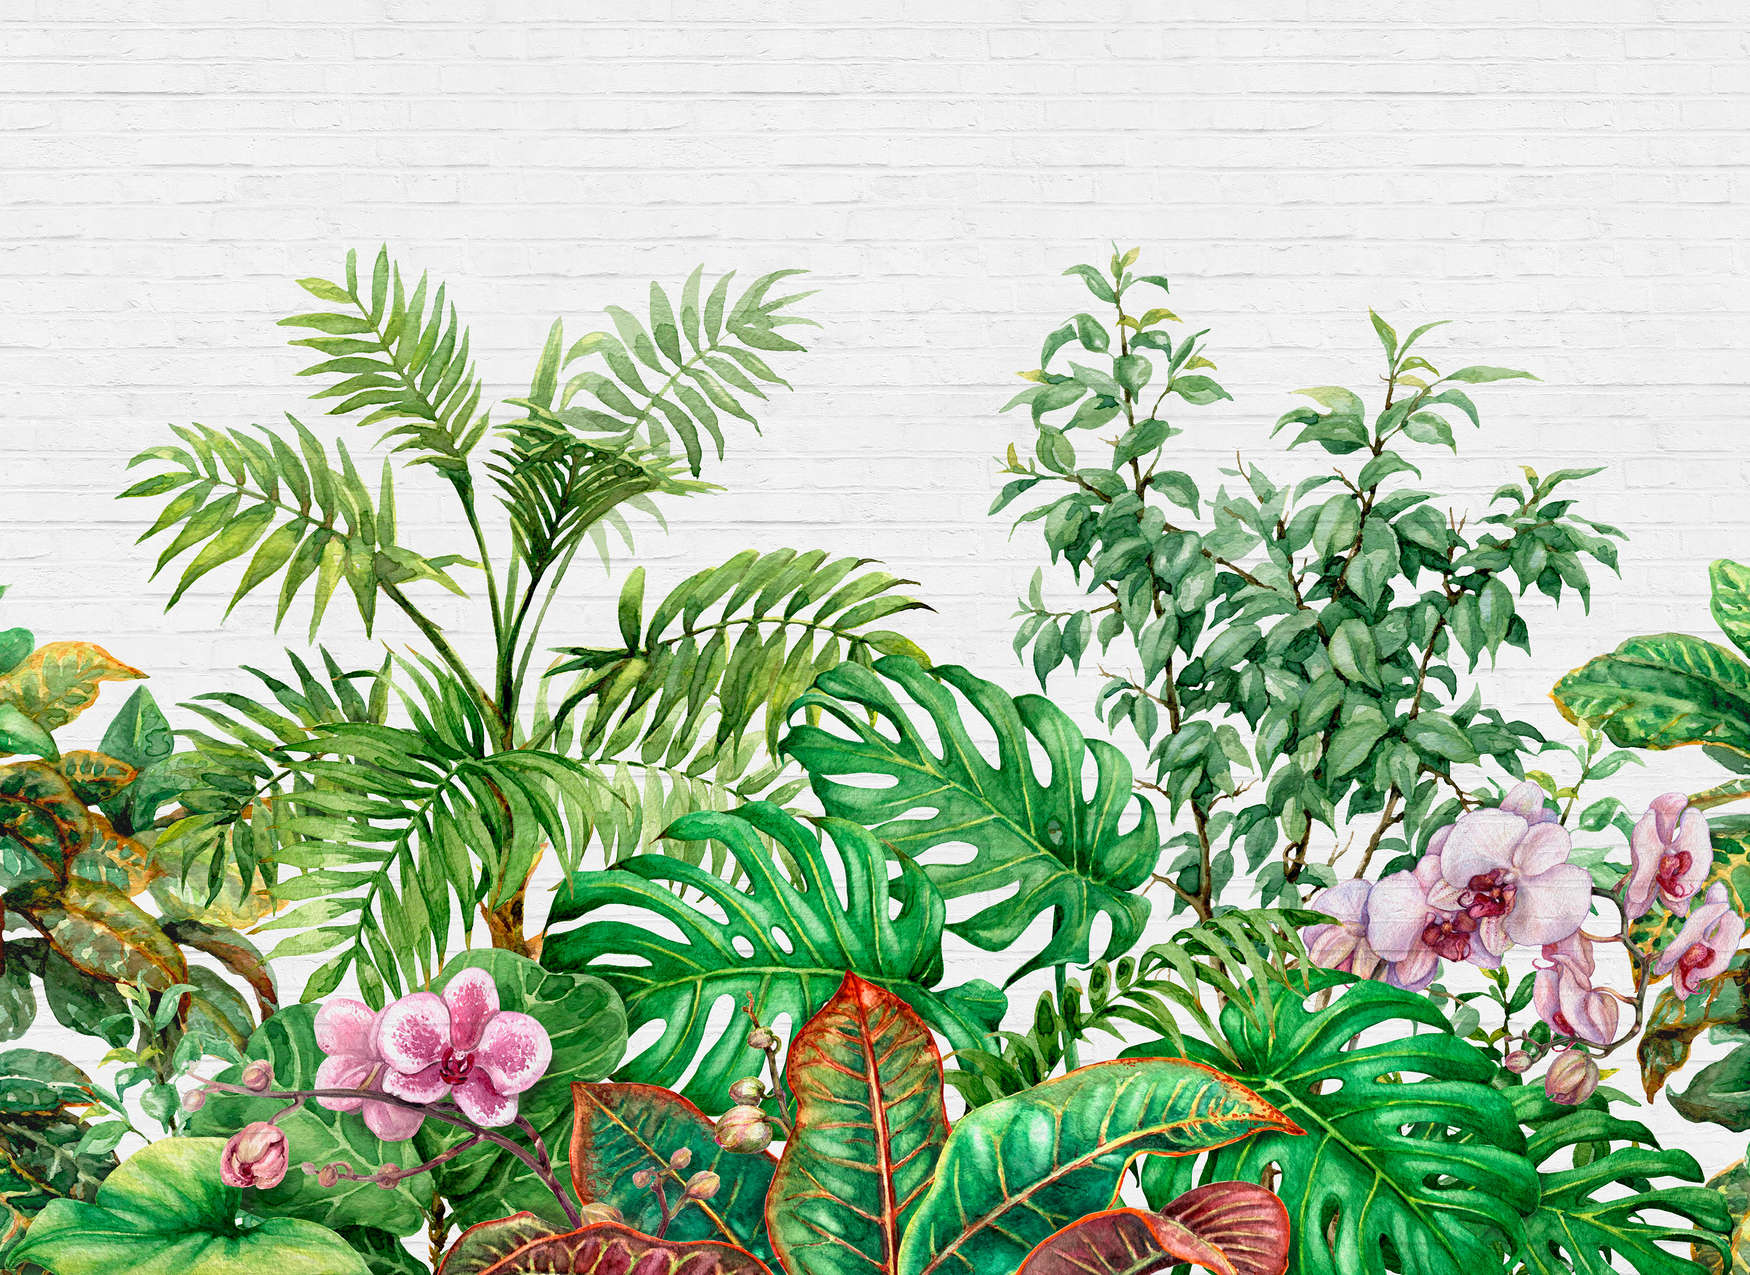             Motivo de pared con hojas de selva - Verde, blanco, rosa
        